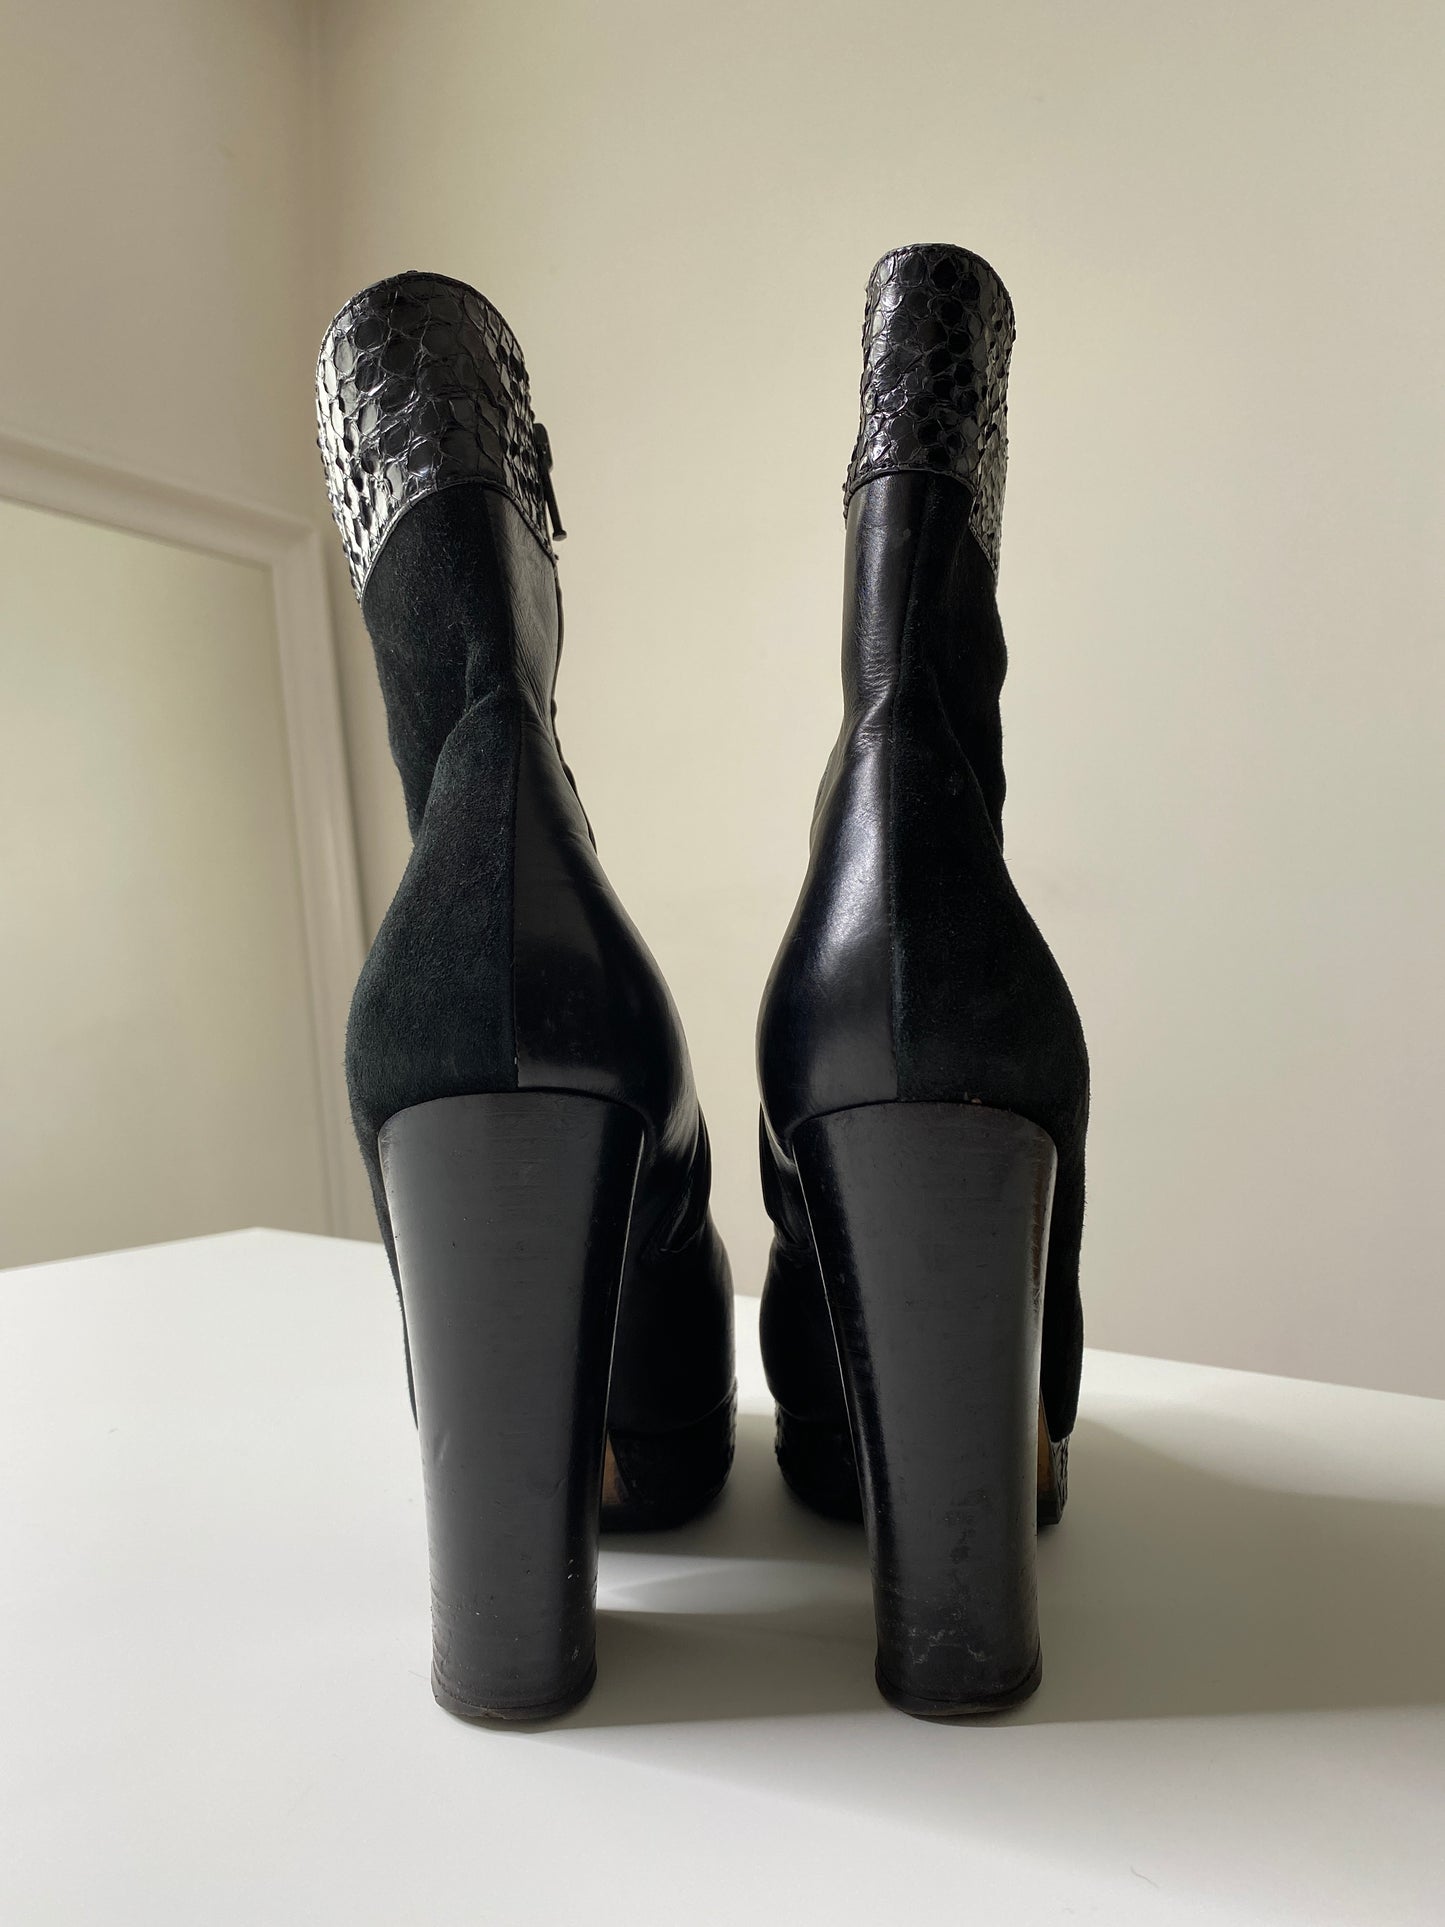 Dolce & Gabbana Boots, 39